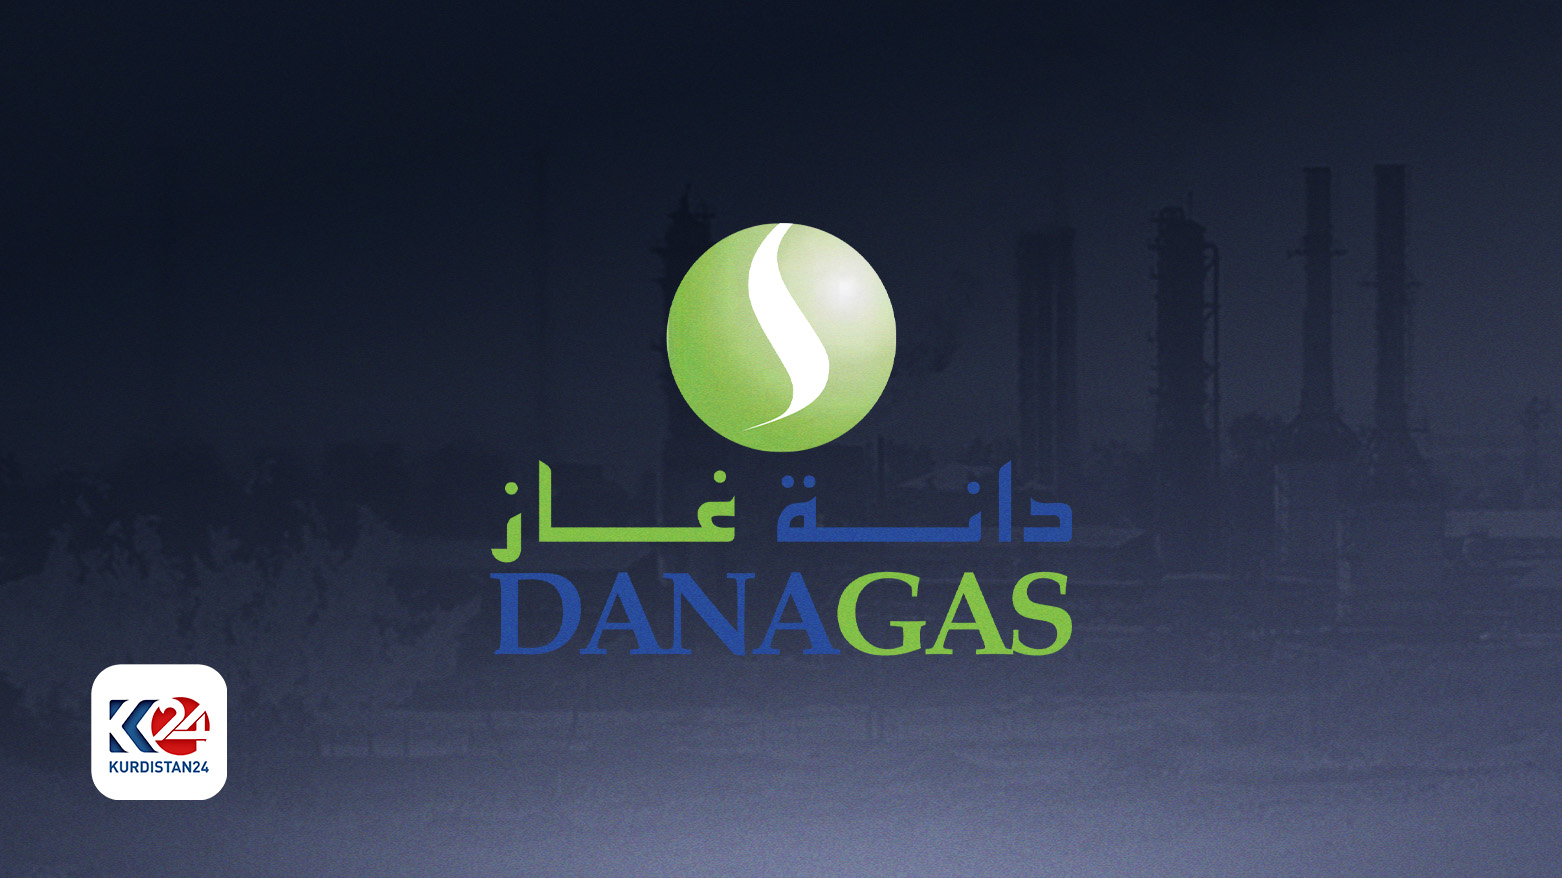 Logoya Kompaniya Dana Gasê